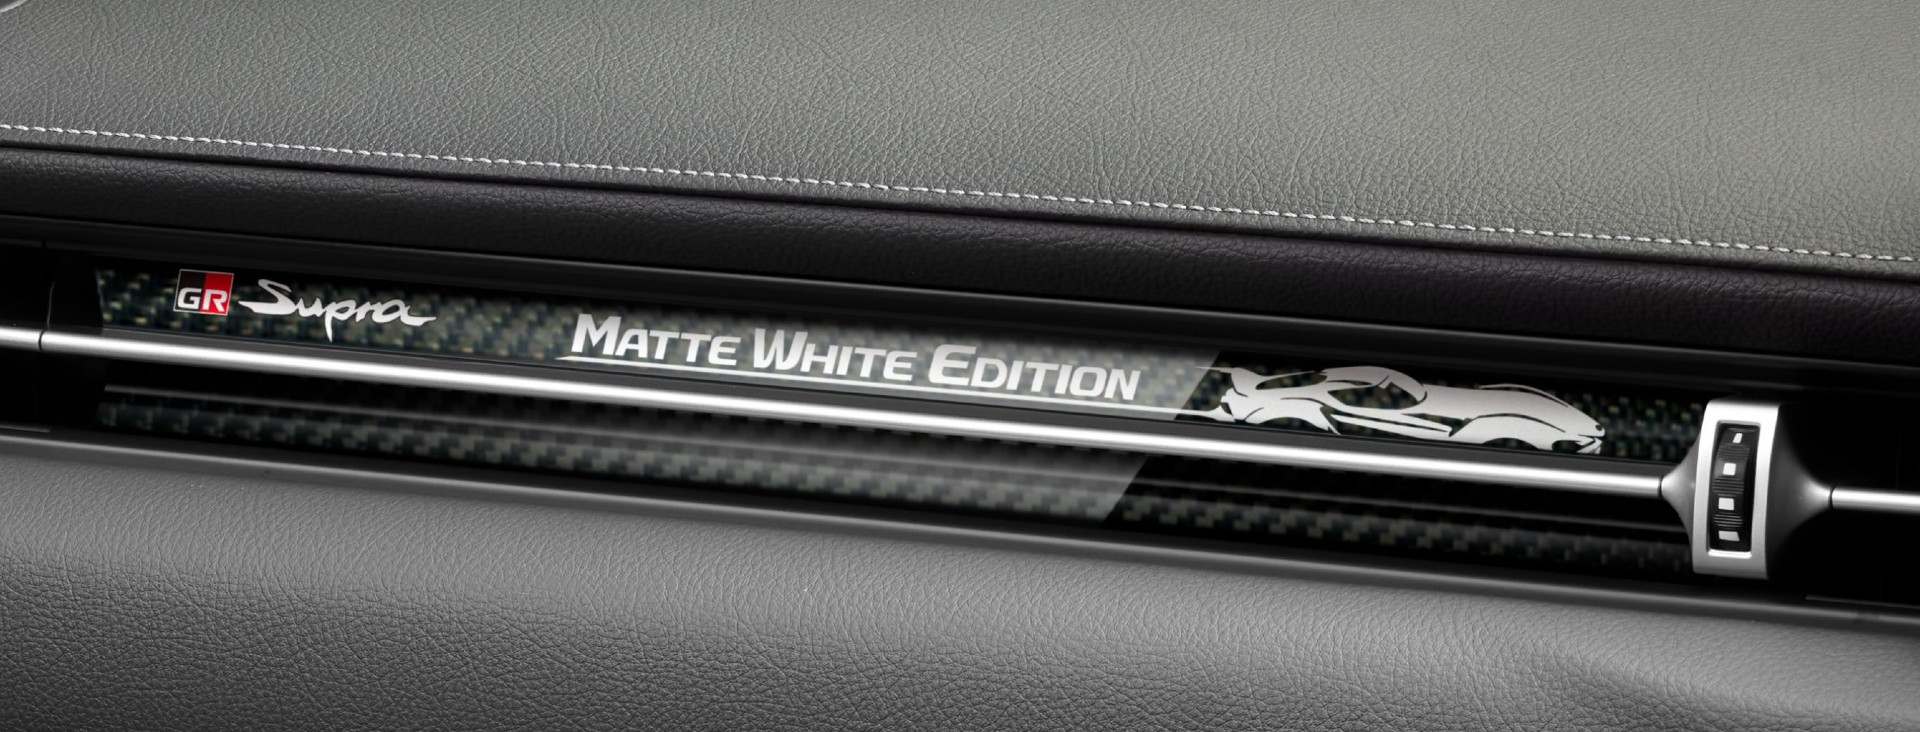 Toyota GR Supra Matte White Edition 